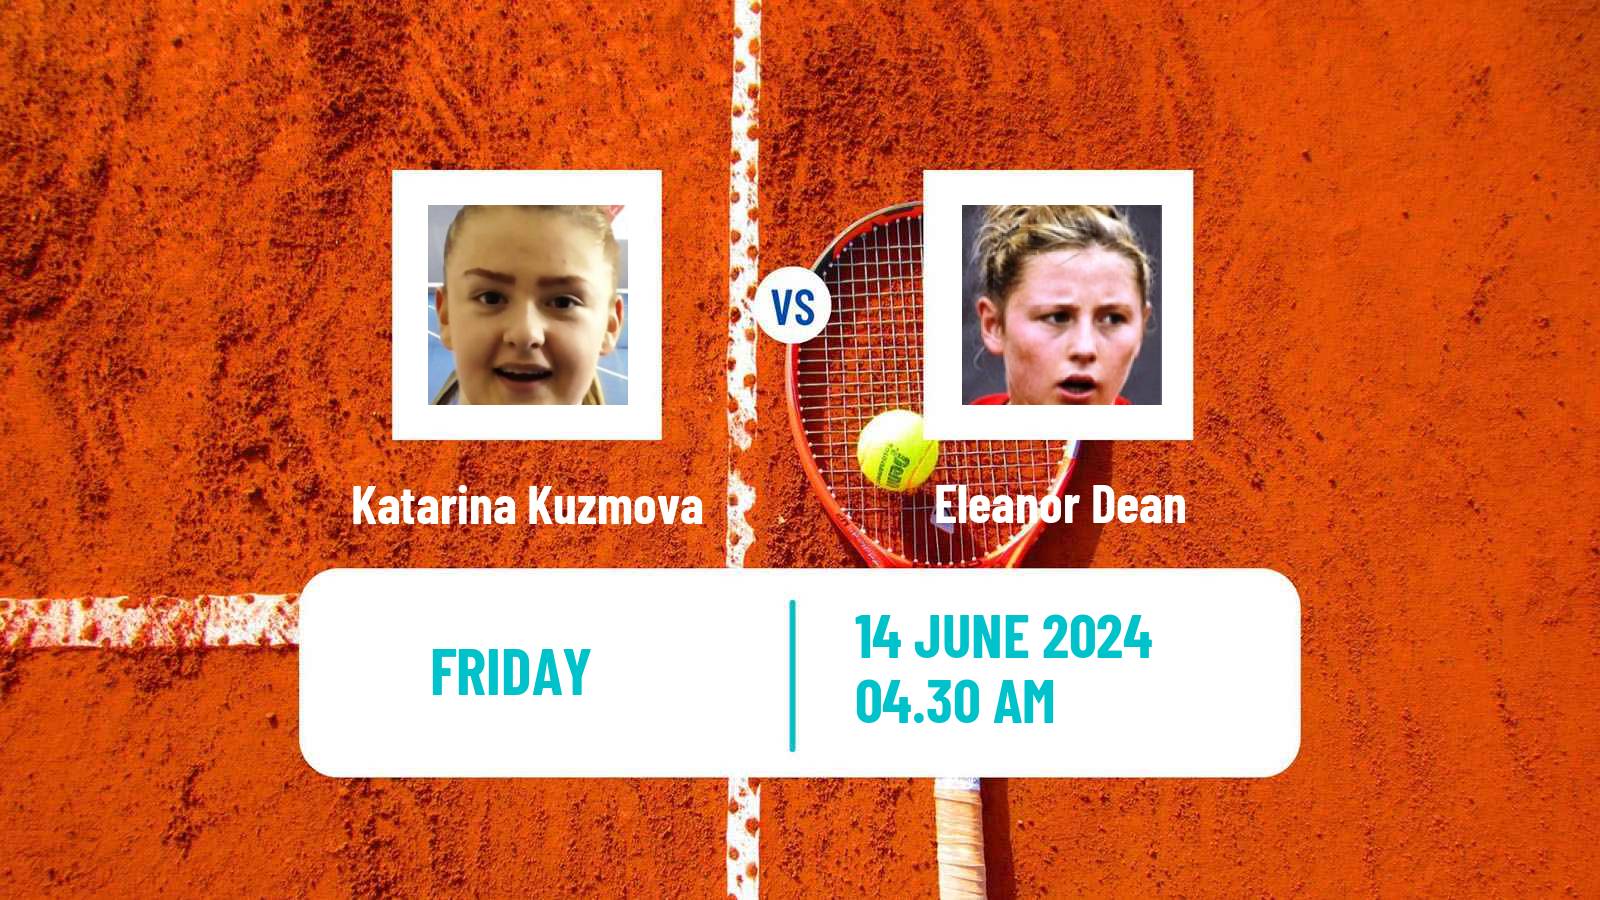 Tennis ITF W15 Monastir 22 Women Katarina Kuzmova - Eleanor Dean